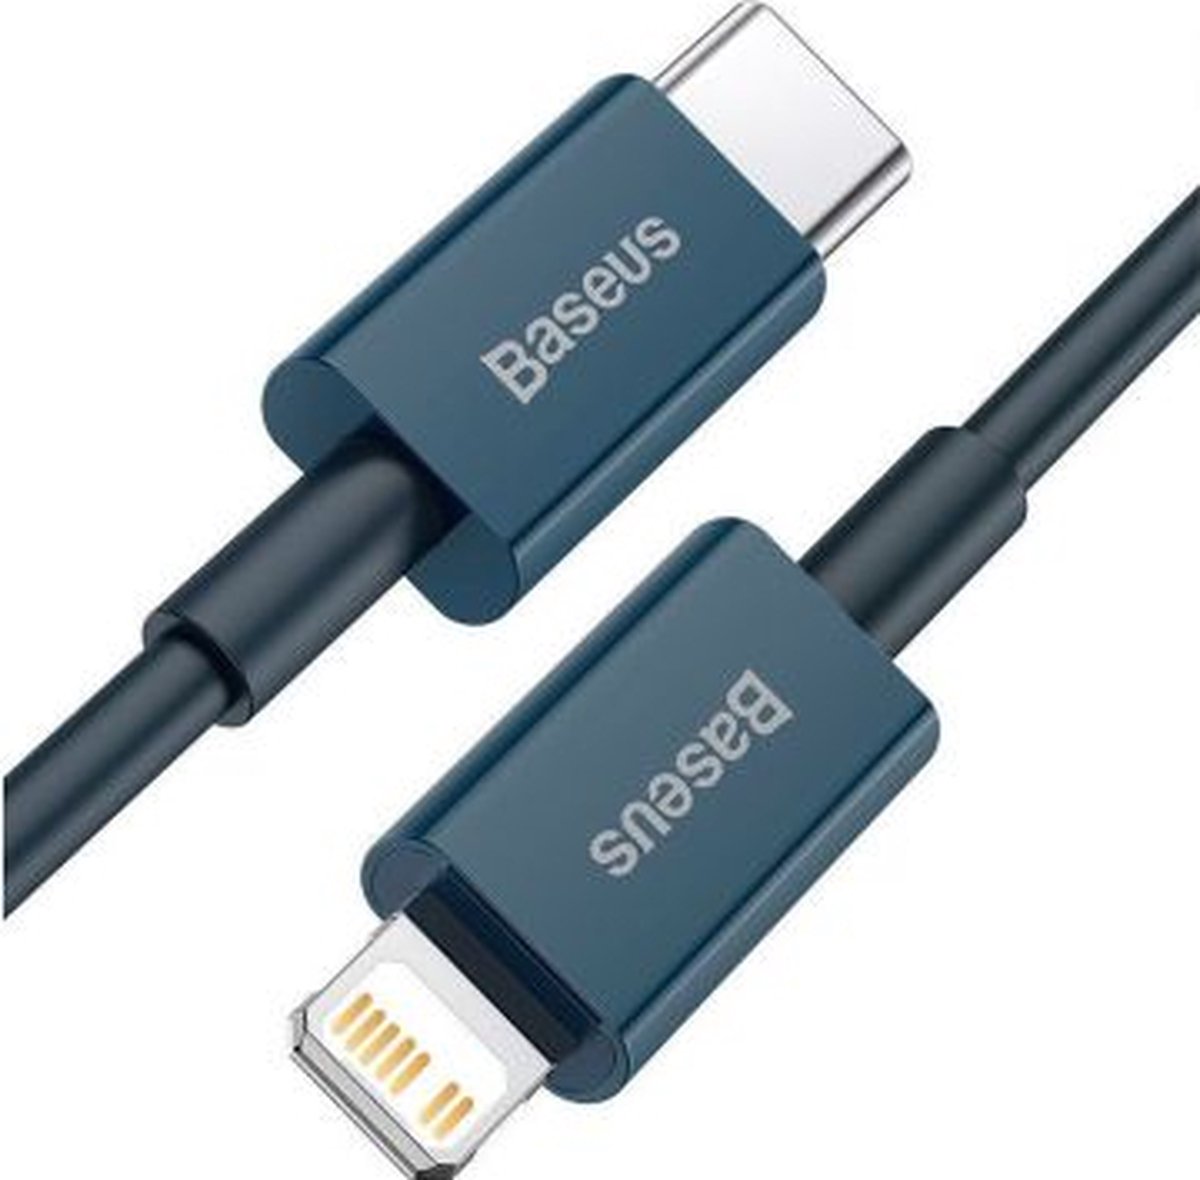 Baseus iPhone kabel Zwart Gevlochten geschikt voor Apple iPhone 6,7,8,X,XS,XR,11,12,13,Mini,Pro Max - iPhone oplaadkabel - iPhone oplader kabel - Lightning naar USB 1 Meter Blauw CATLYS-A03